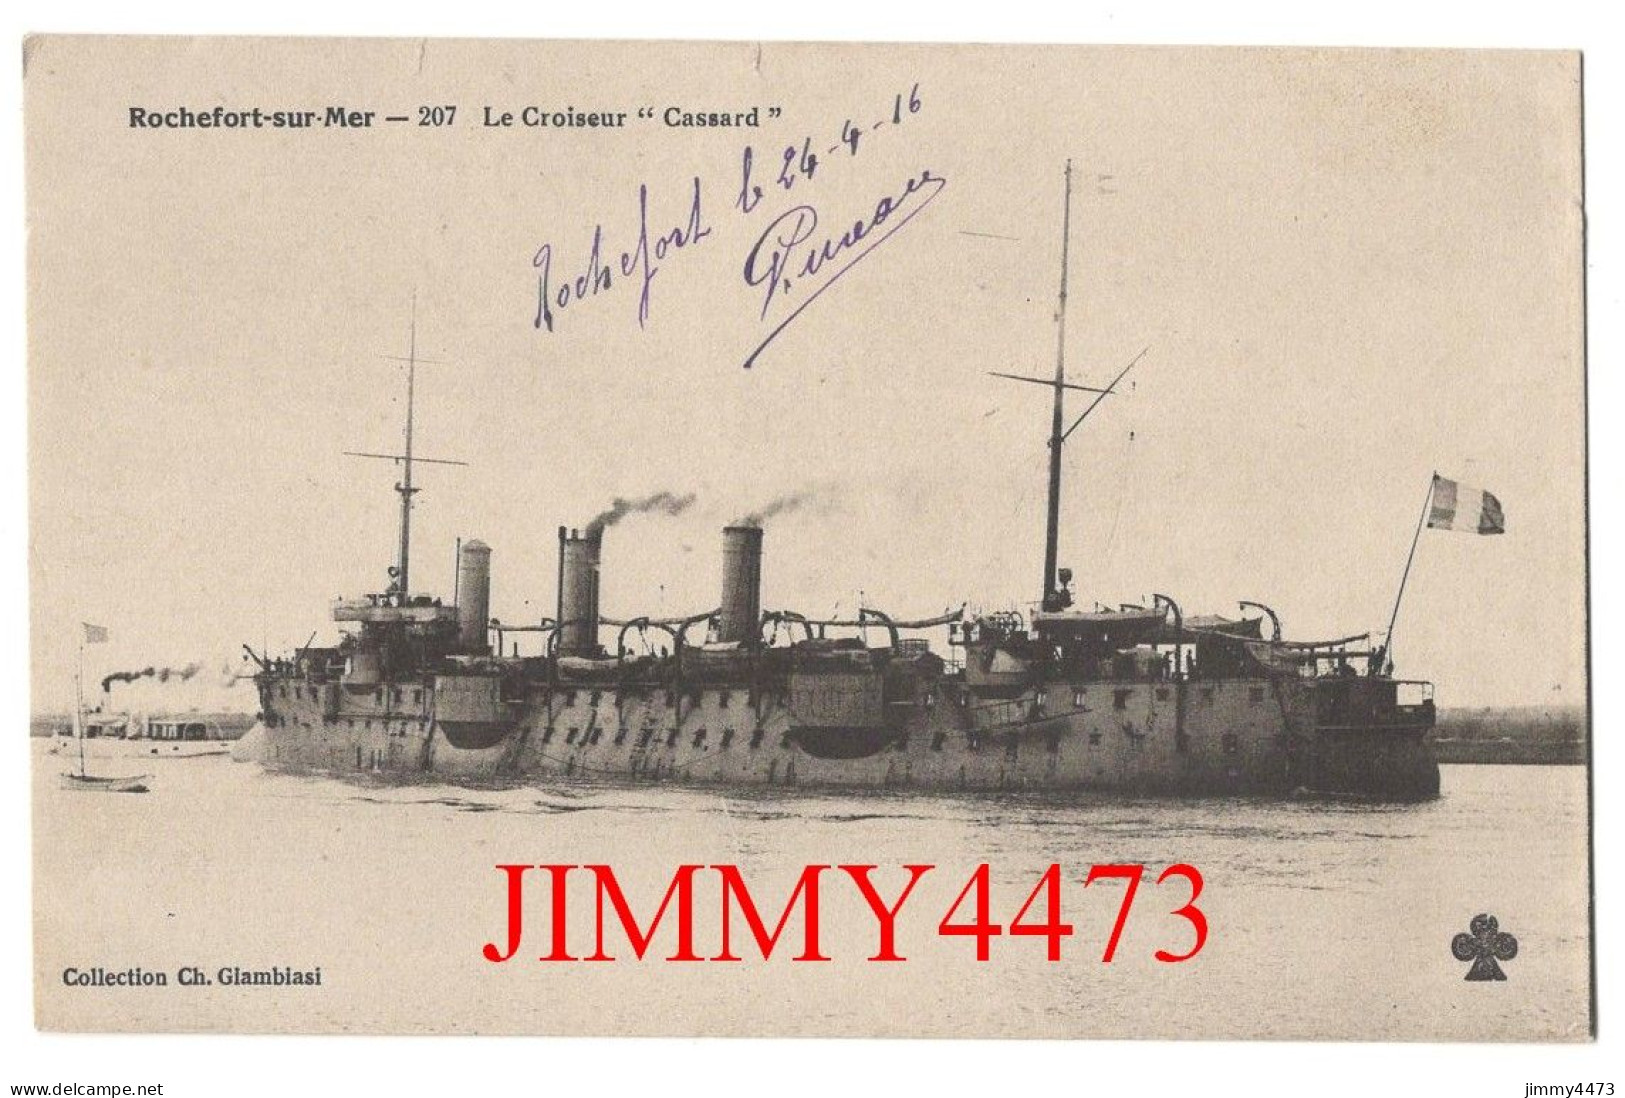 CPA - Rochefort-sur-Mer - Le Croiseur " Cassard " En 1916 - N° 207 - Coll. Ch. Glambiasi - Oorlog